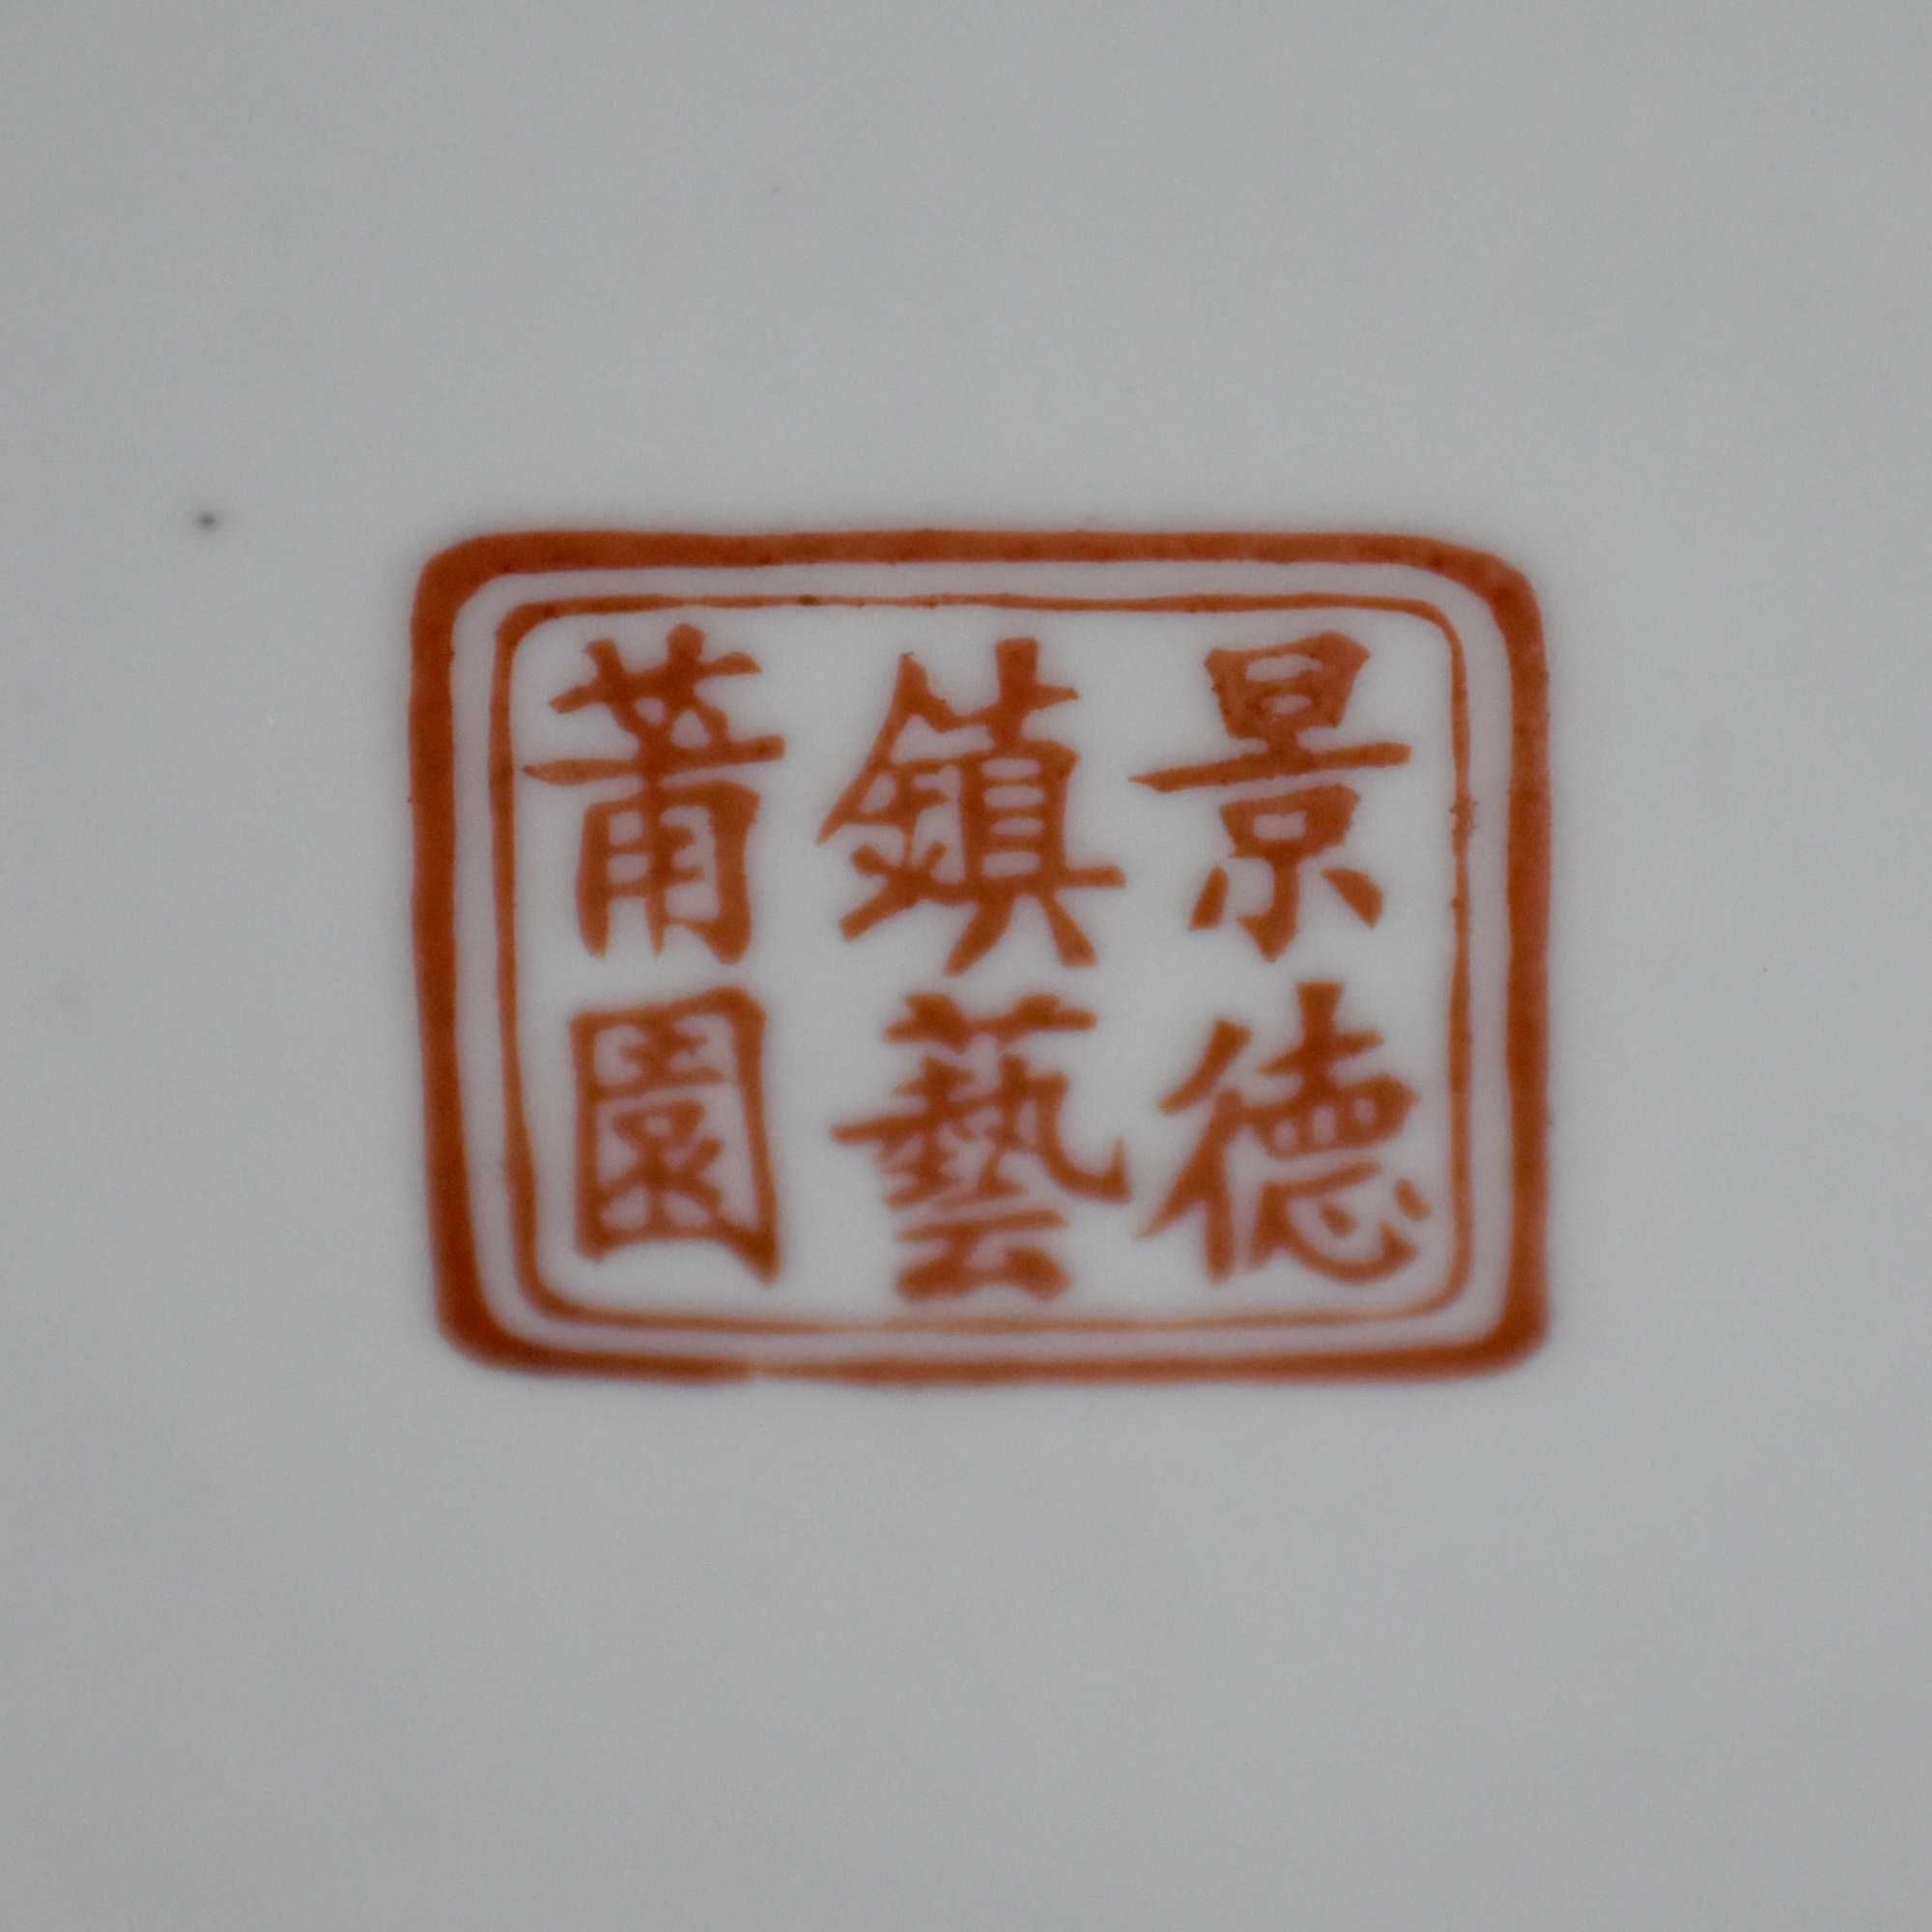 Jarra / Jarrão porcelana da China, com carateres chineses